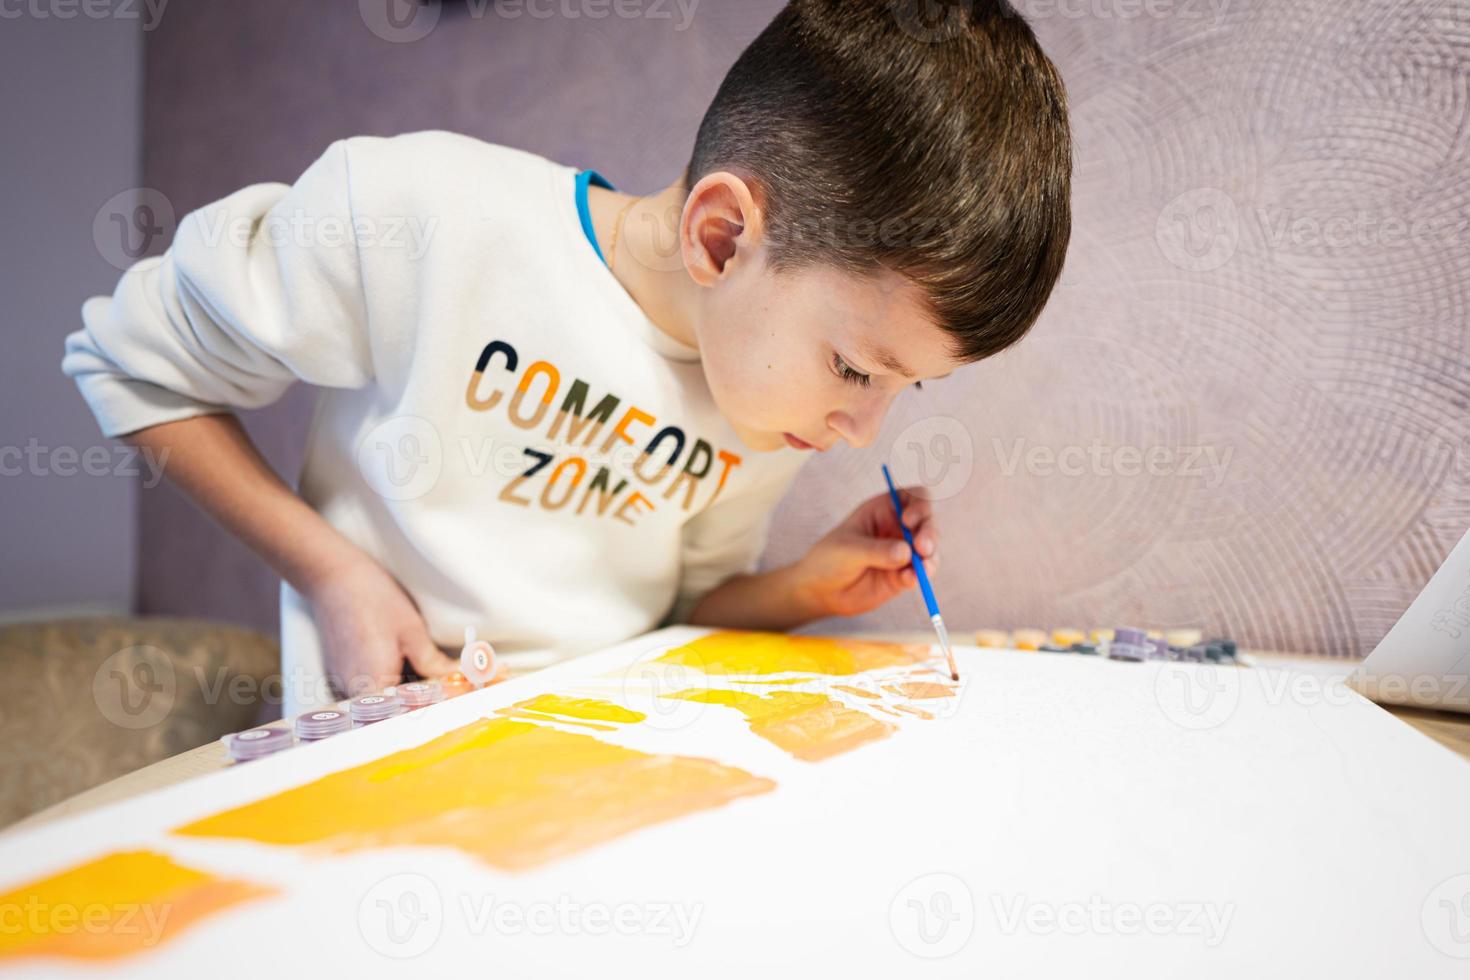 izquierda entregó chico es pintura por números con gouache a hogar.comodidad zona. foto